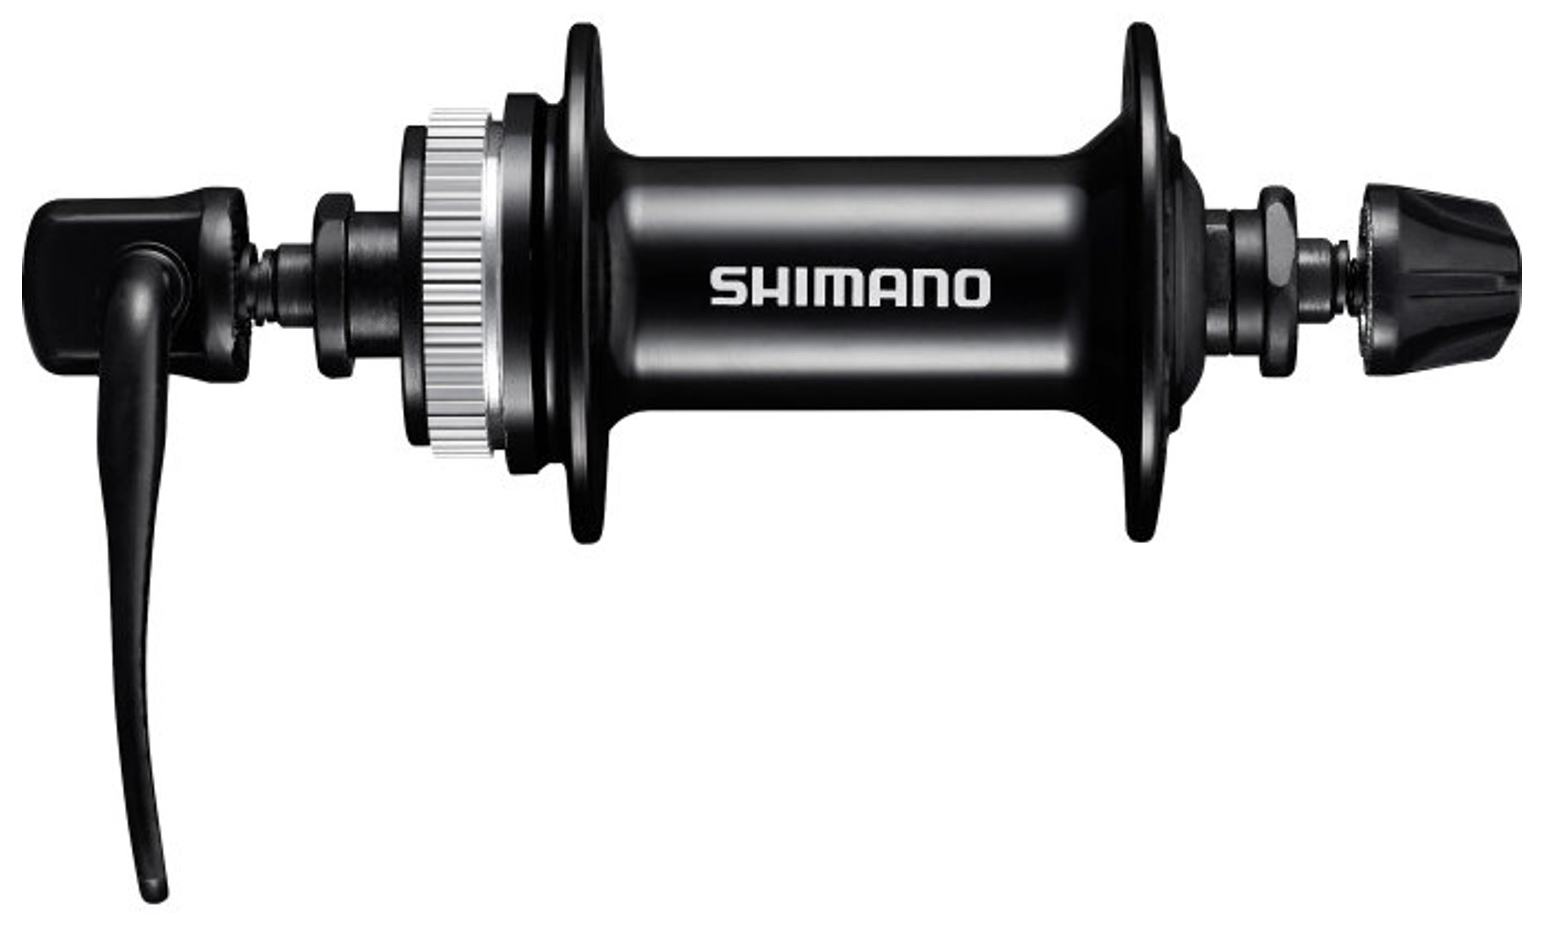  Втулка для велосипеда Shimano MT200, 36 отв (EHBMT200A)